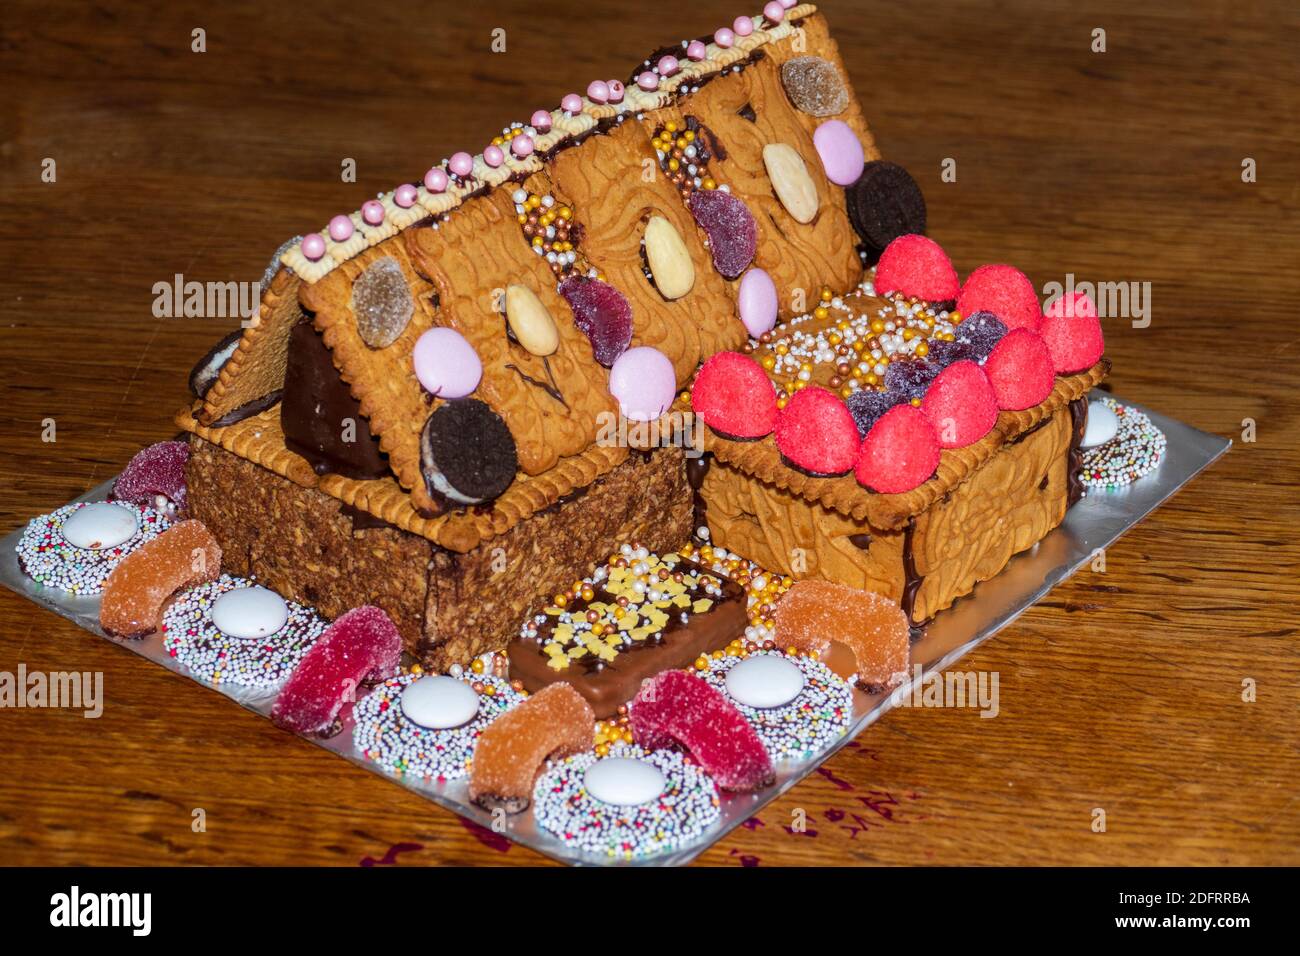 Knusperhäuschen aus Lebkuchen, Keksen, Spekulatius und Süßigkeiten Stock Photo